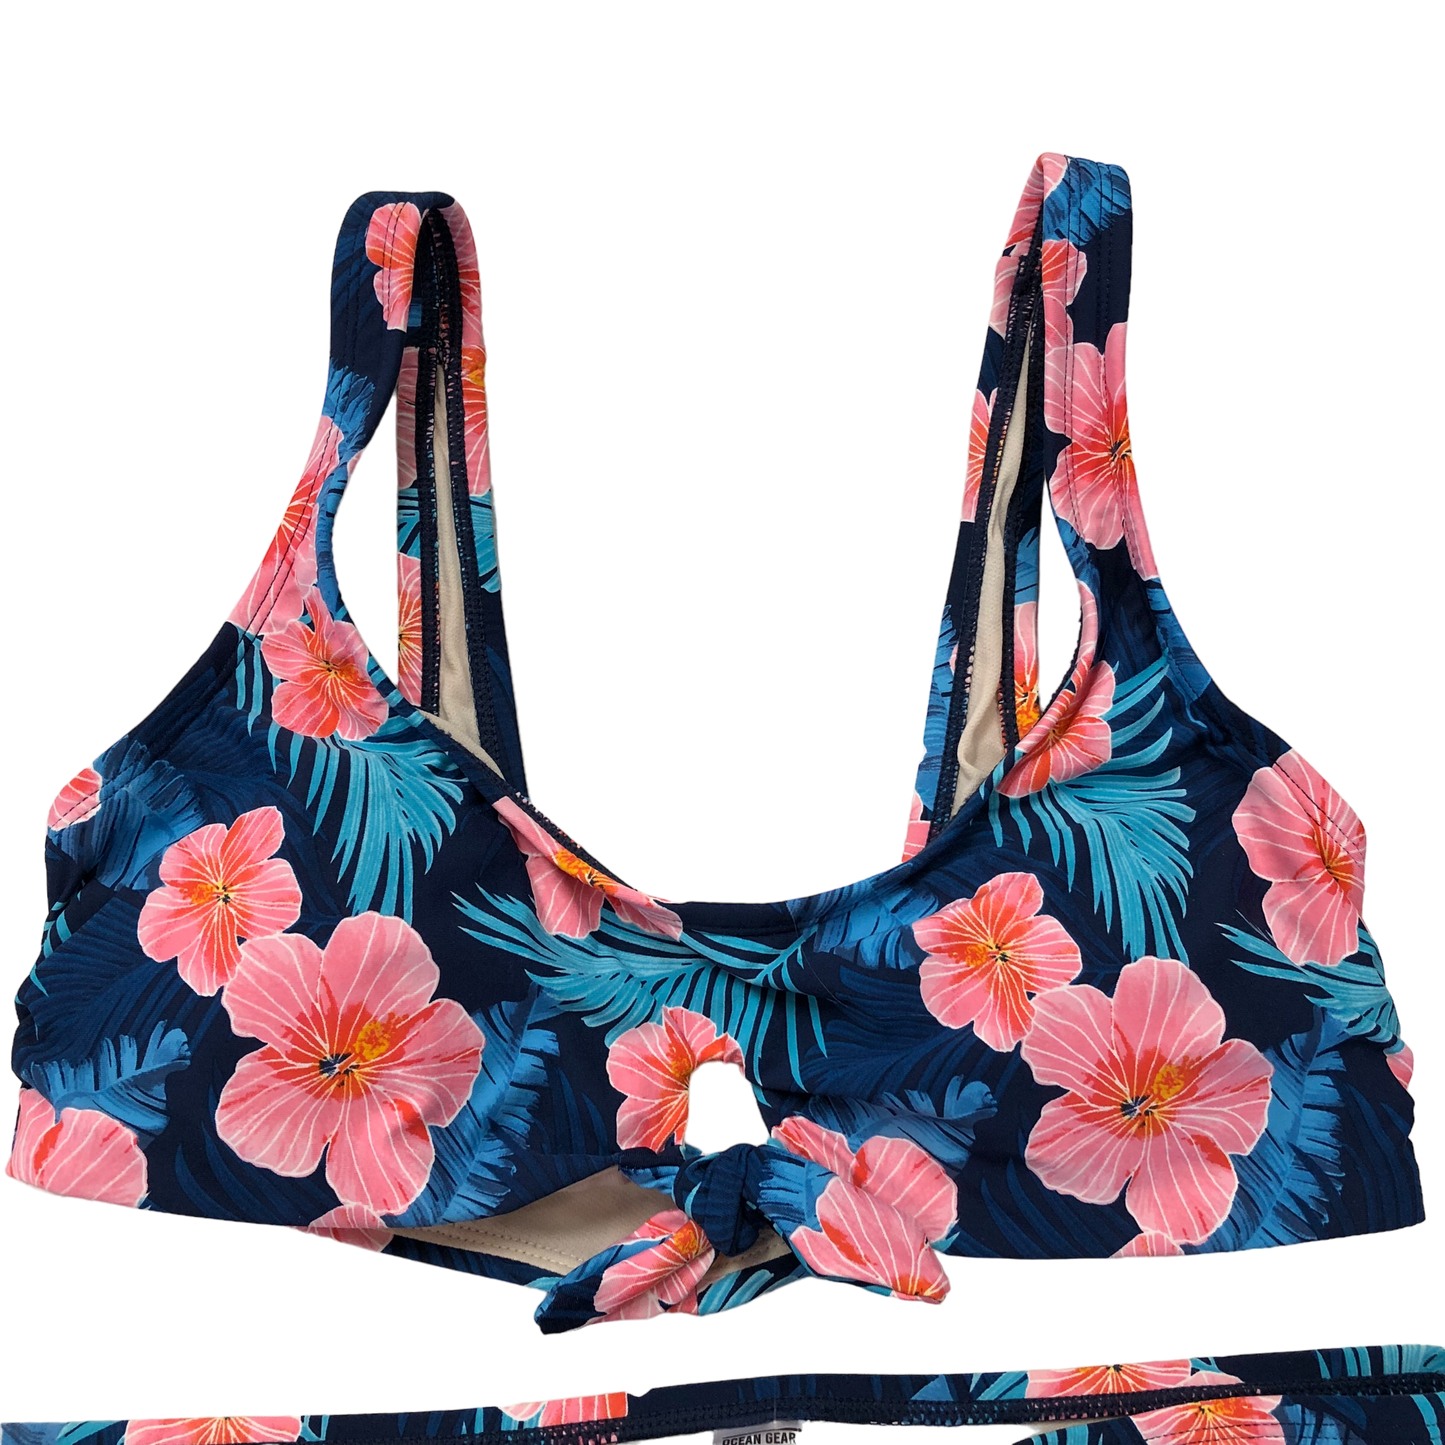 Floral Print Swimsuit Cmc, Size L